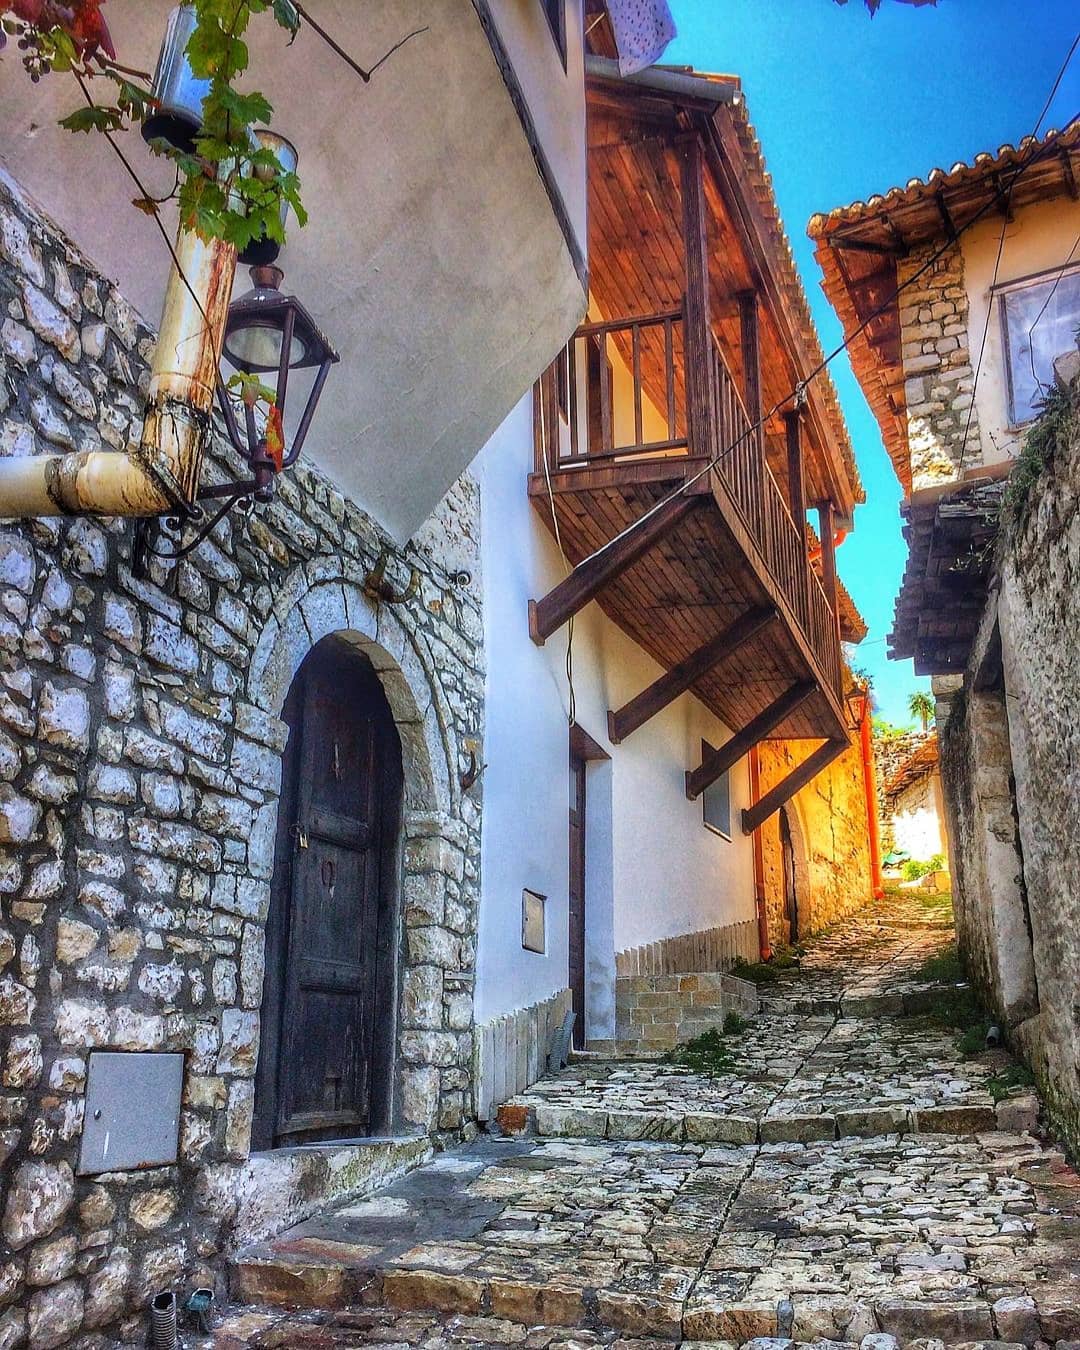 Day 5 Ohrid – Berat (Albania) - Tirana